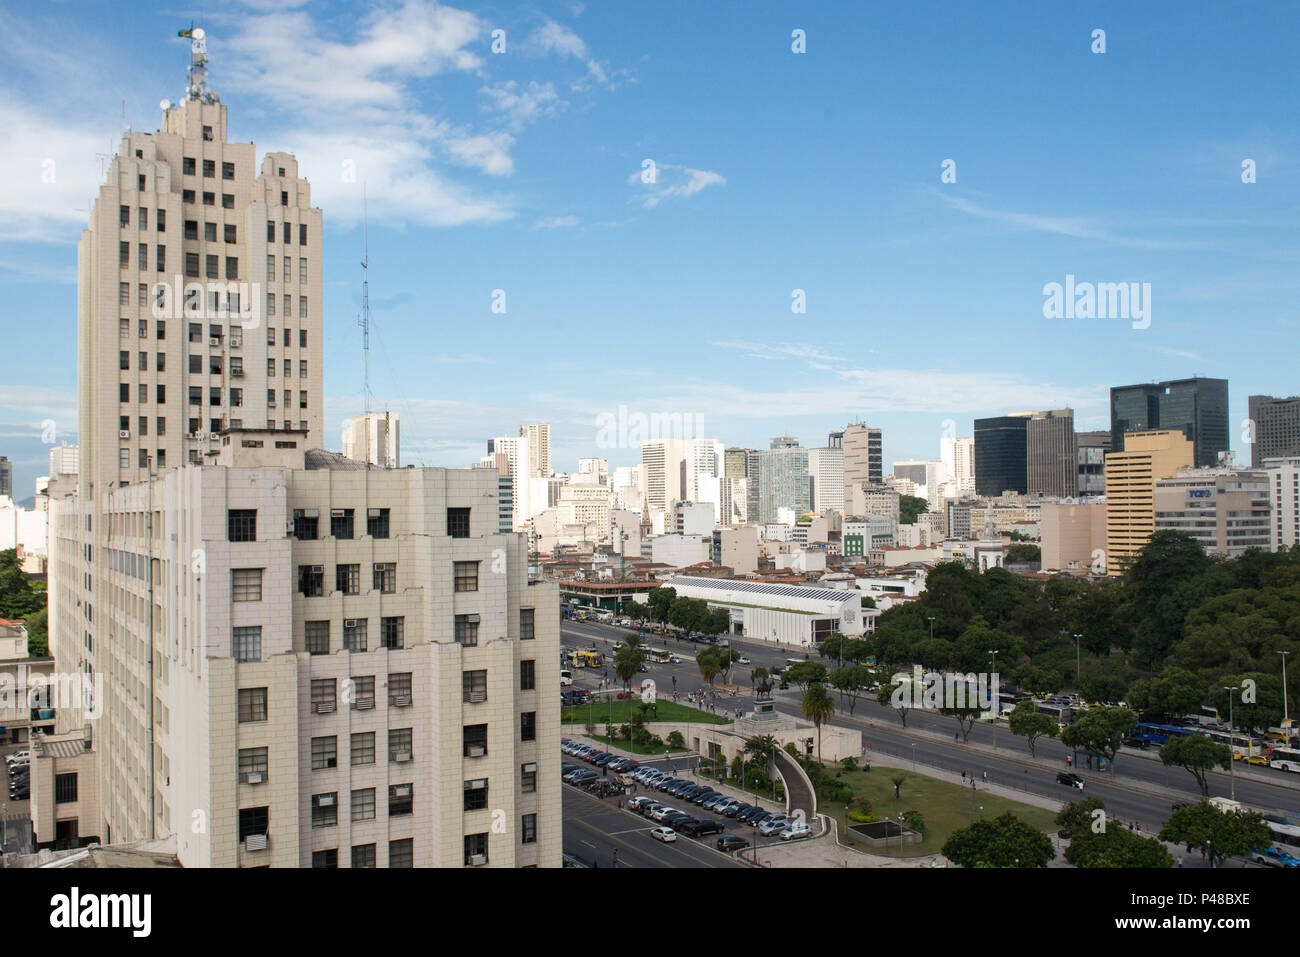 RIO DE JANEIRO, RJ - 31.03.2015: Vista de parte do Palácio Duque de Caxias no centro da cidade com a Avenida Presidente Vargas. Foto: Celso Pupo / Fotoarena Stock Photo